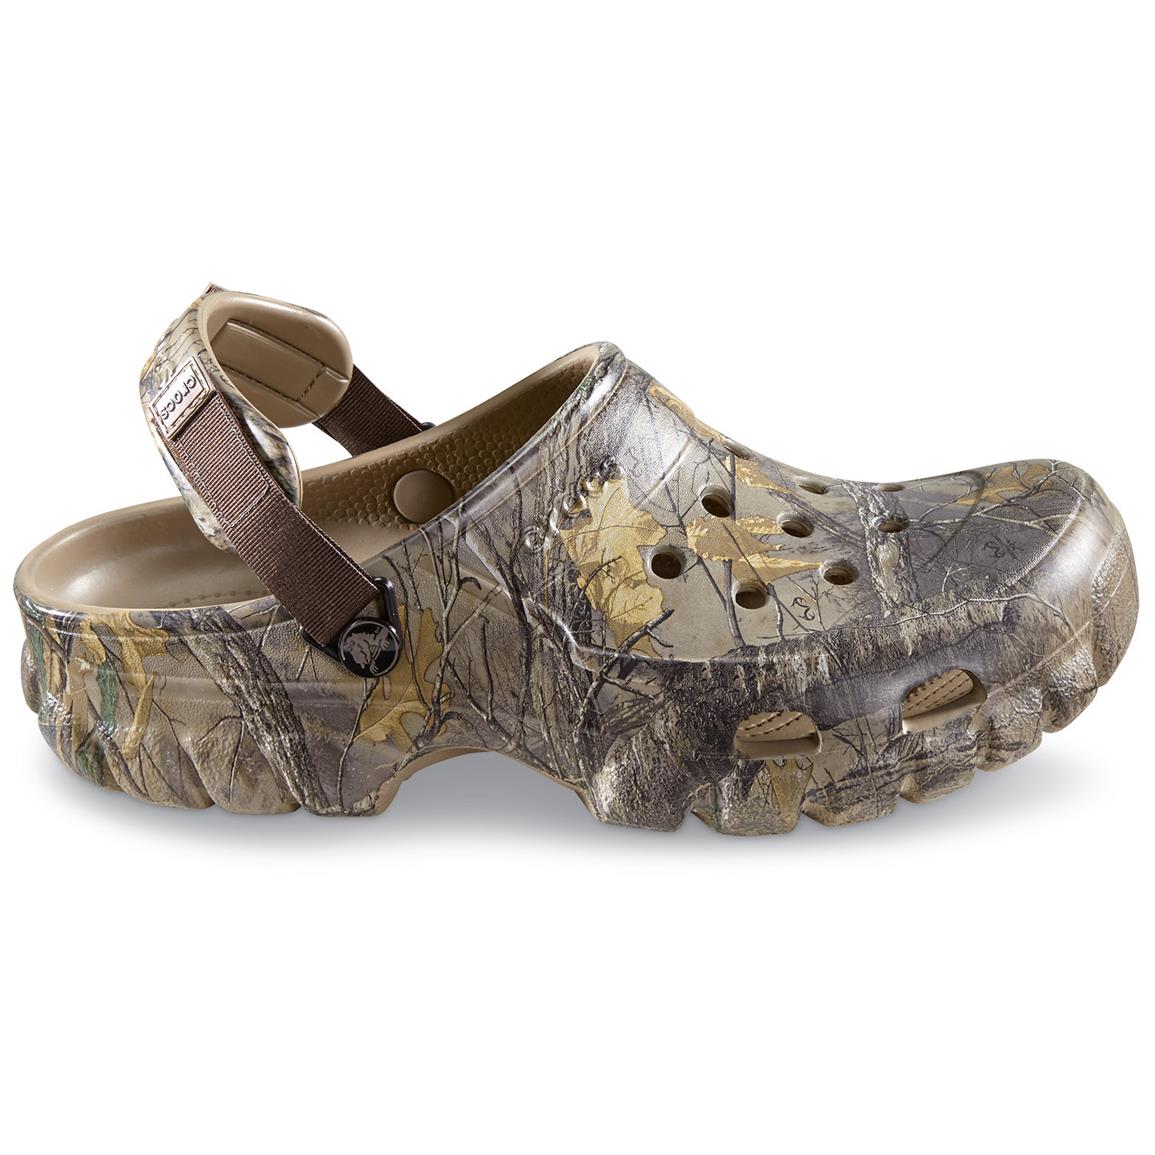 Crocs Men's Offroad Camo Sport Clogs, Realtree - 676336, Sandals & Flip ...